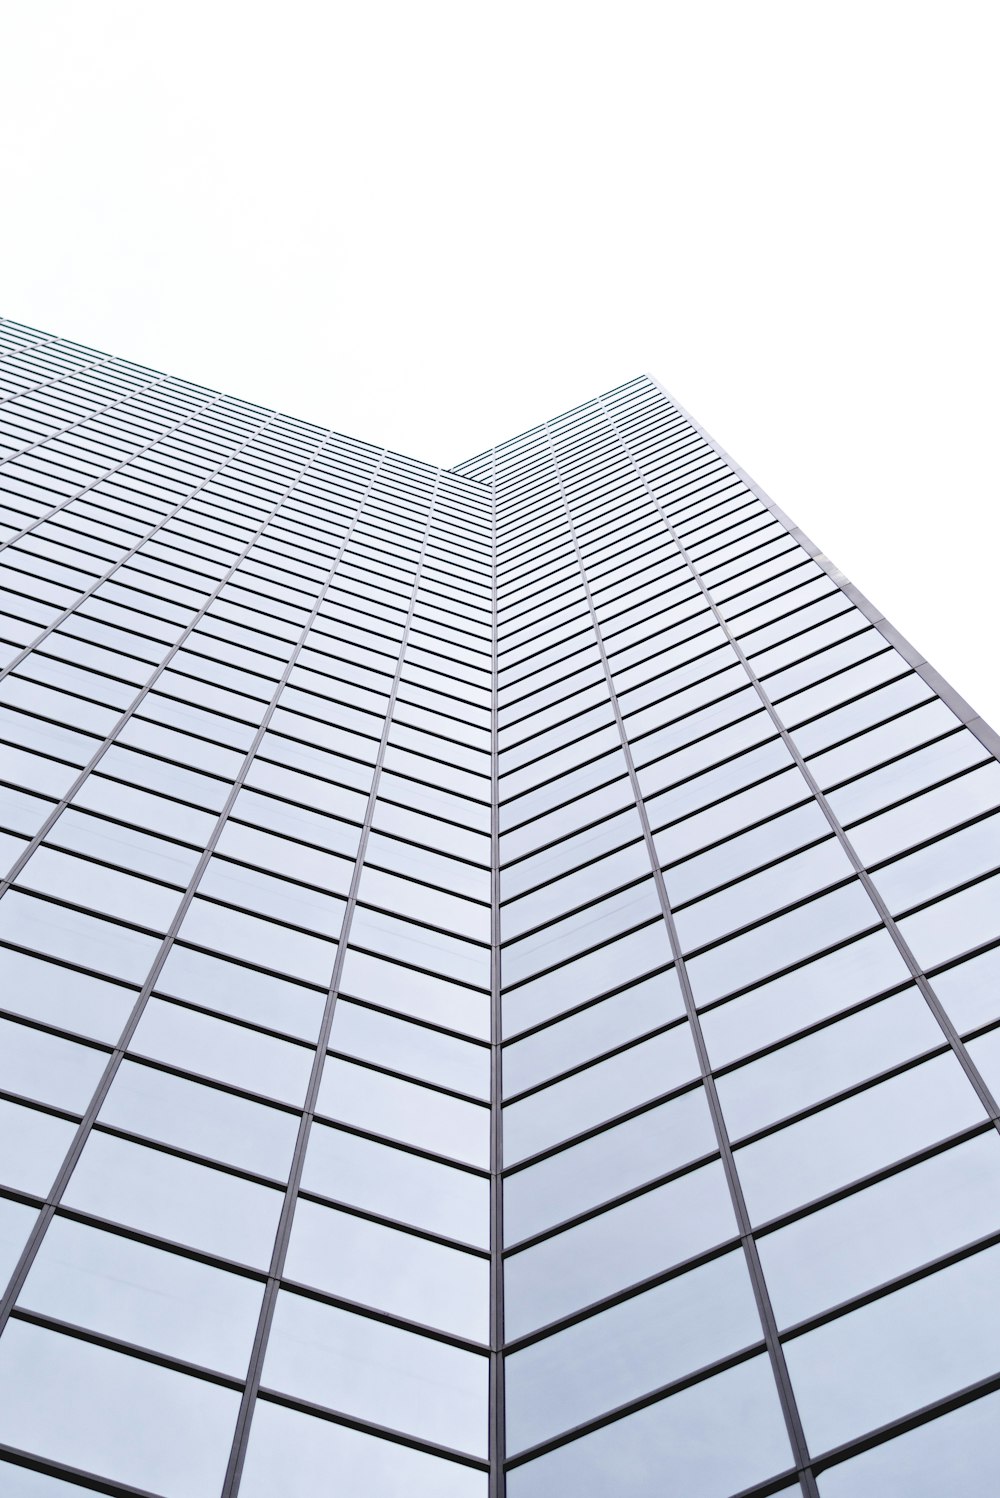 fotografia de baixo ângulo do edifício de vidro do arranha-céus